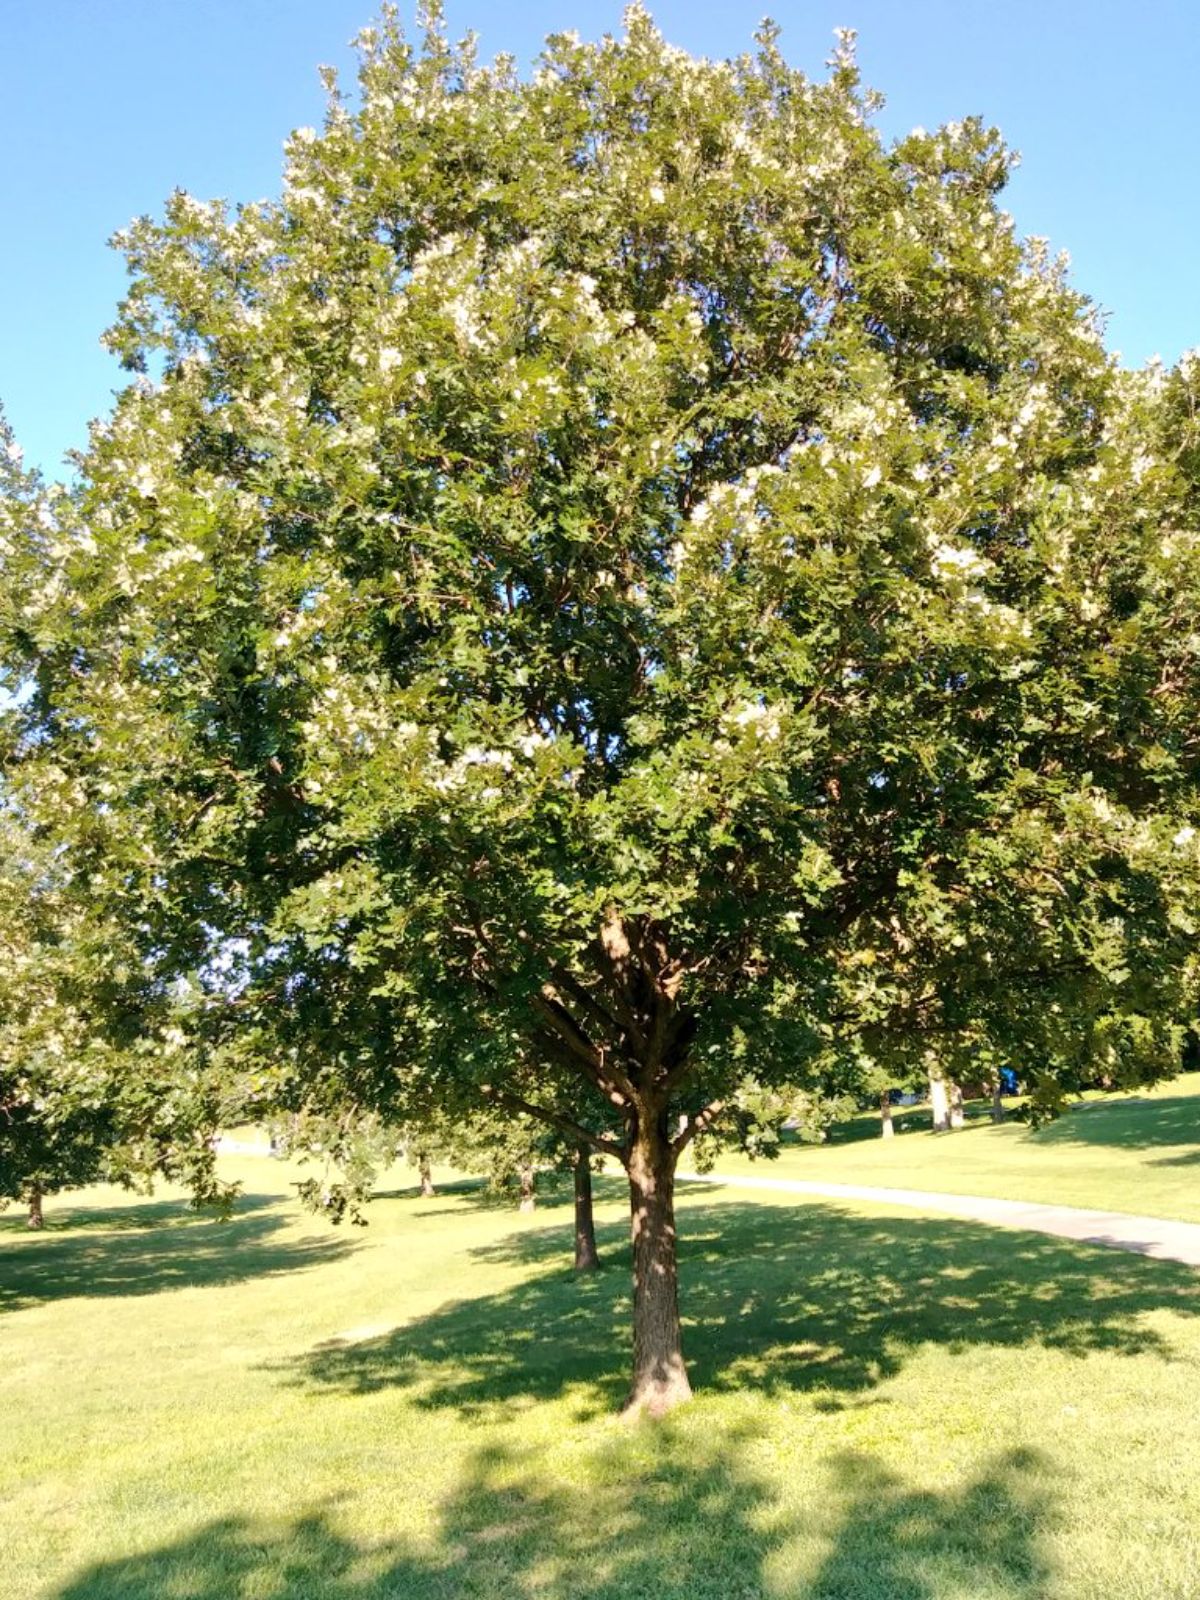 Burr oak trees in a park